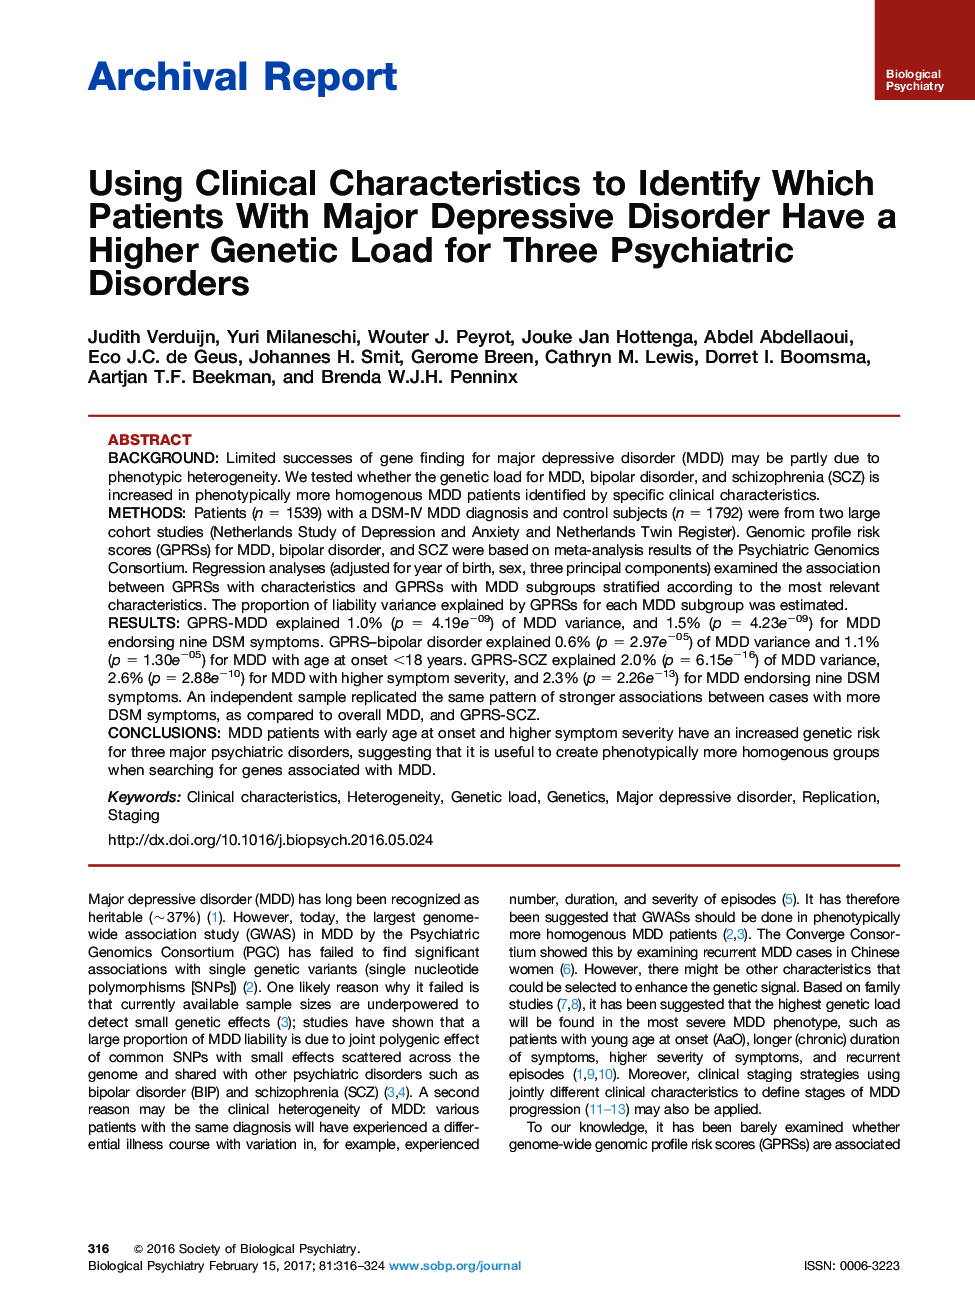 گزارش بایگانی با استفاده از ویژگی های بالینی برای شناسایی کدام بیماران مبتلا به اختلال افسردگی عمده دارای بار ژنتینی بالاتر برای سه اختلال روانپزشکی 